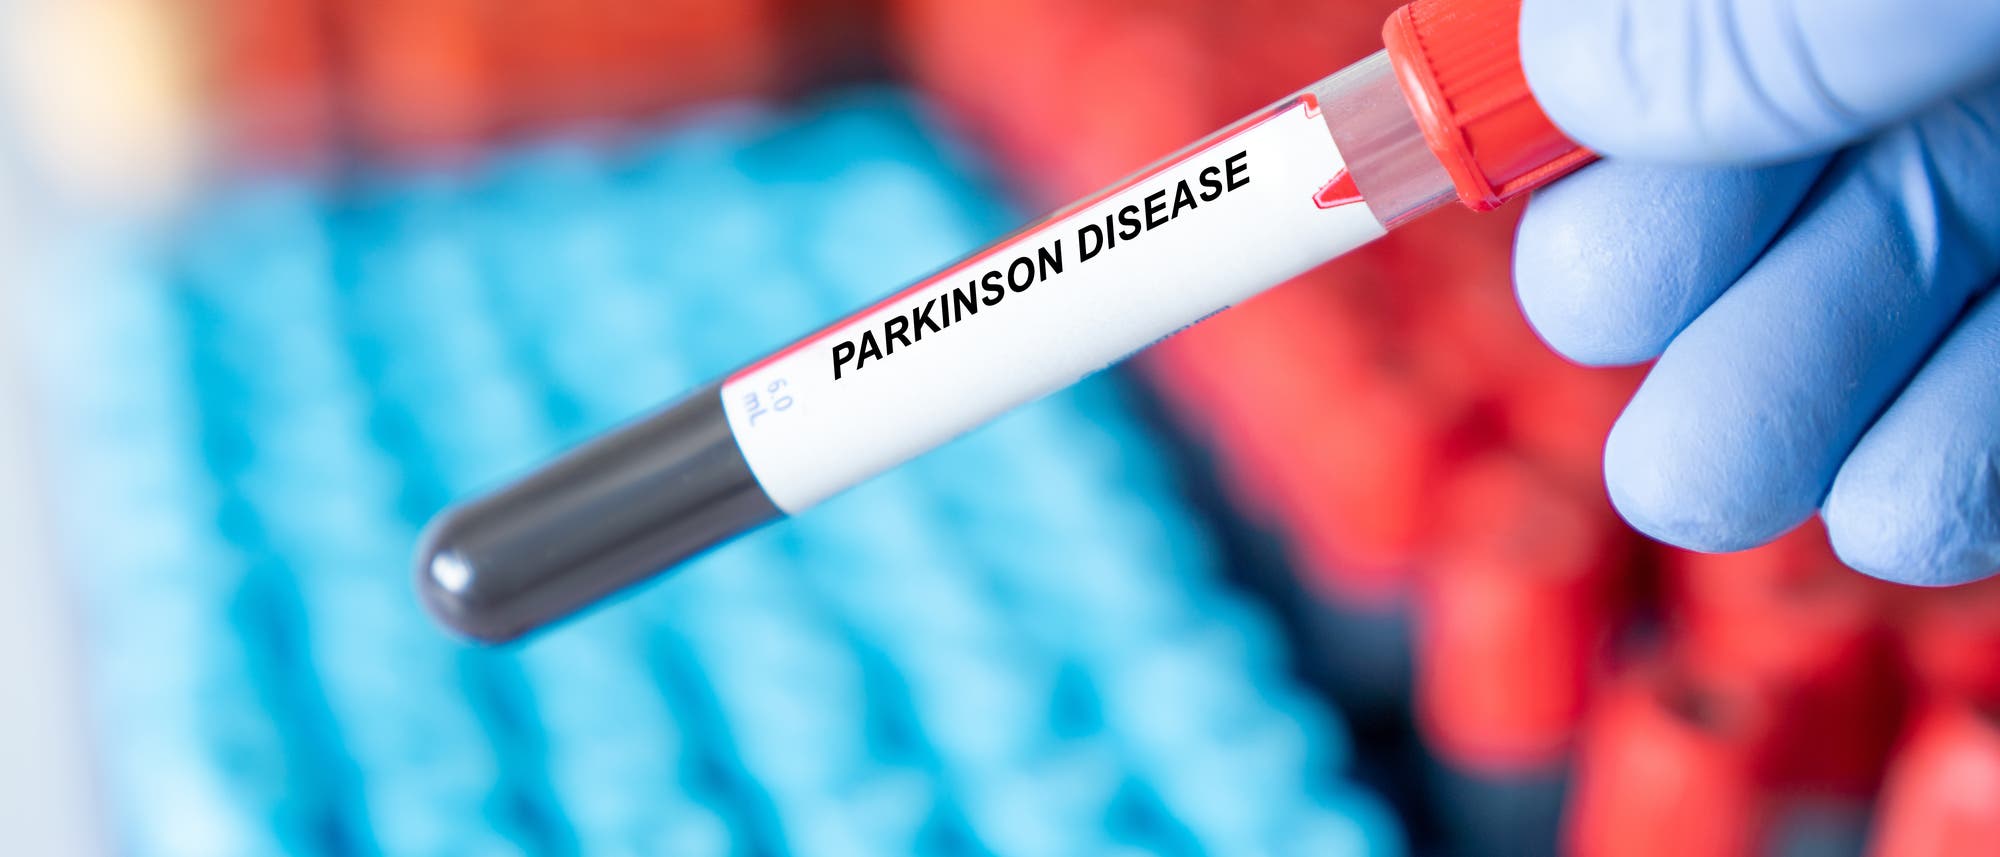 Röhrchen mit einer Blutprobe, die mit »Parkinson Disease« beschriftet ist